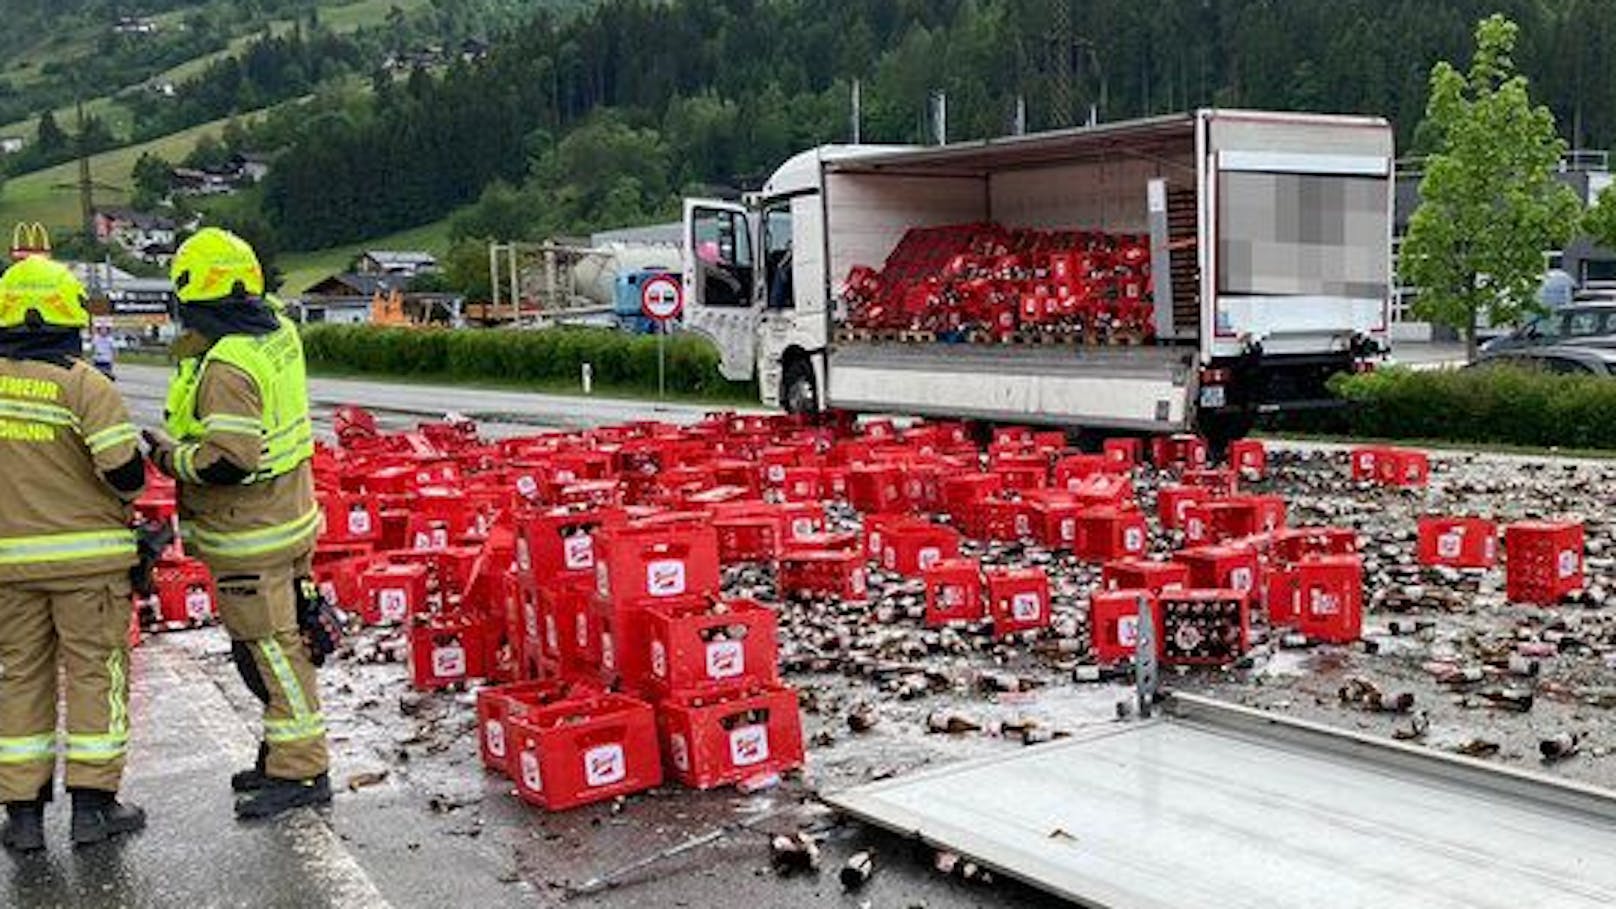 Tausende Liter Bier auf der Straße gelandet